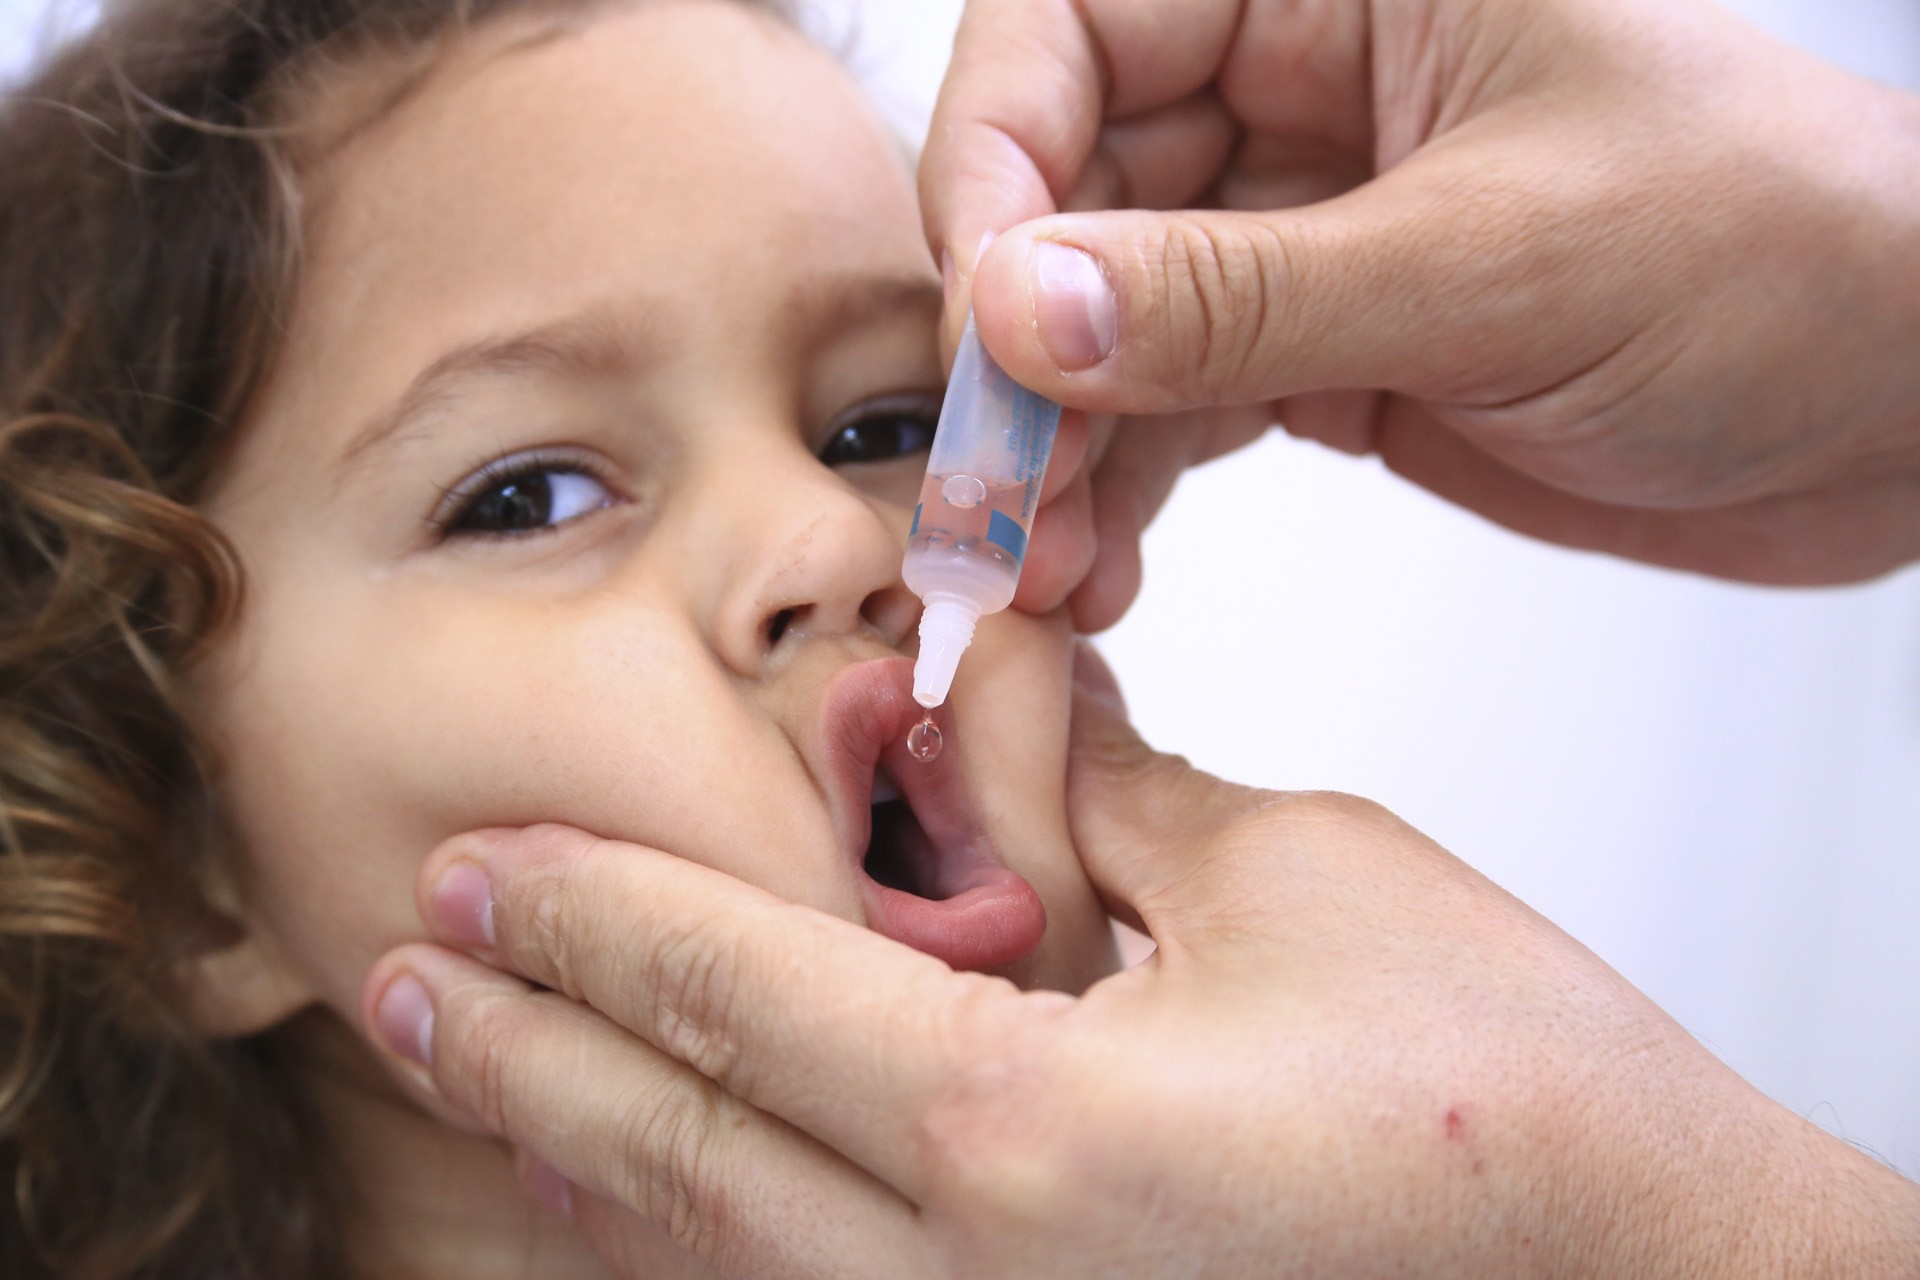 No próximo sábado, 8, UBSs realizam Dia D da Vacinação contra Poliomielite